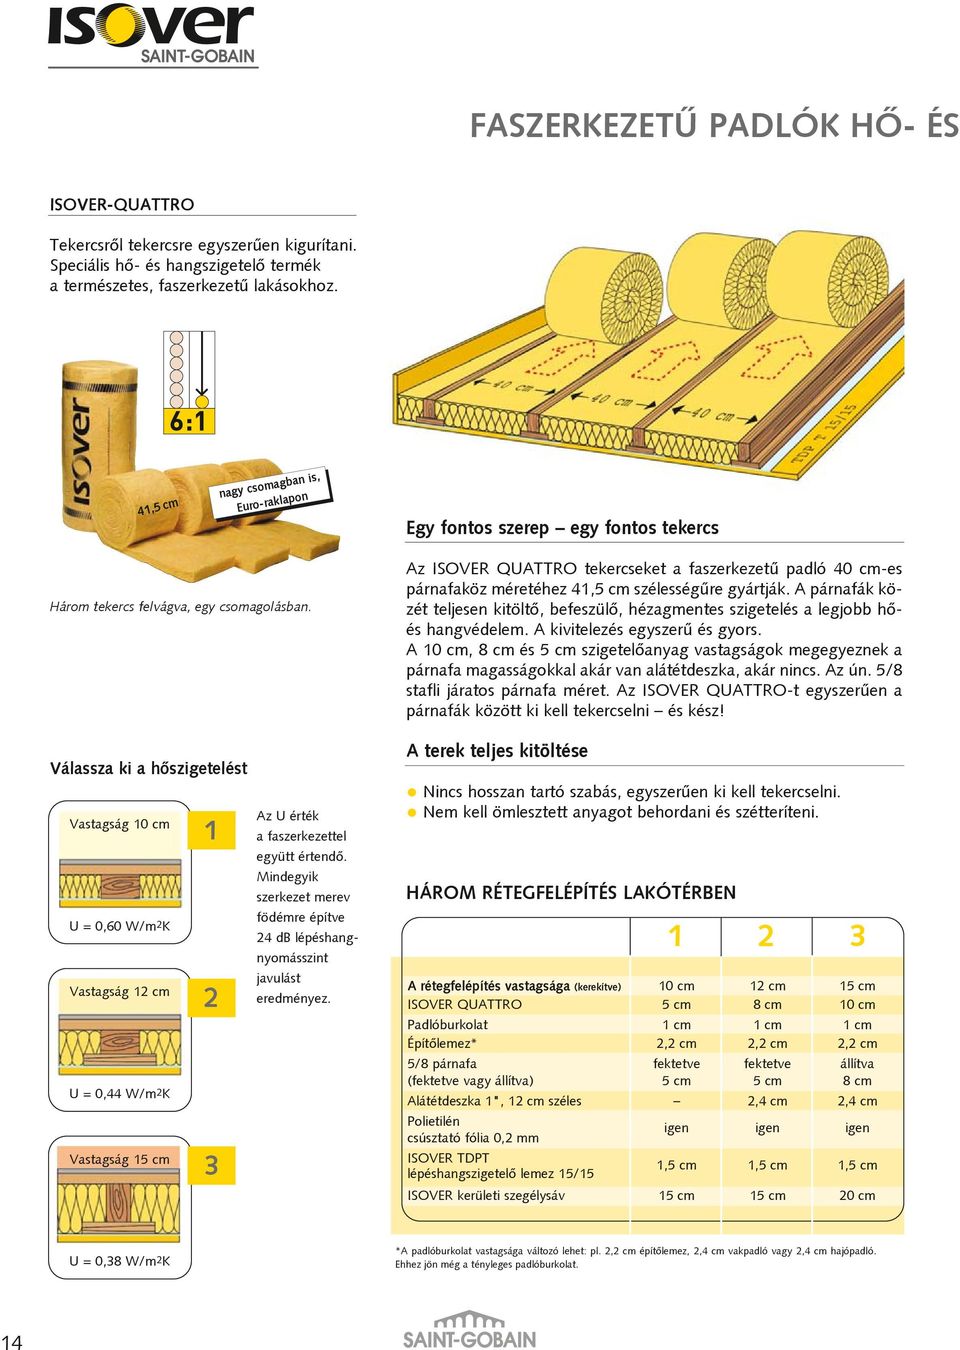 Egy fontos szerep egy fontos tekercs Az ISOVER QUATTRO tekercseket a faszerkezetû padló 40 cm-es párnafaköz méretéhez 41,5 cm szélességûre gyártják.